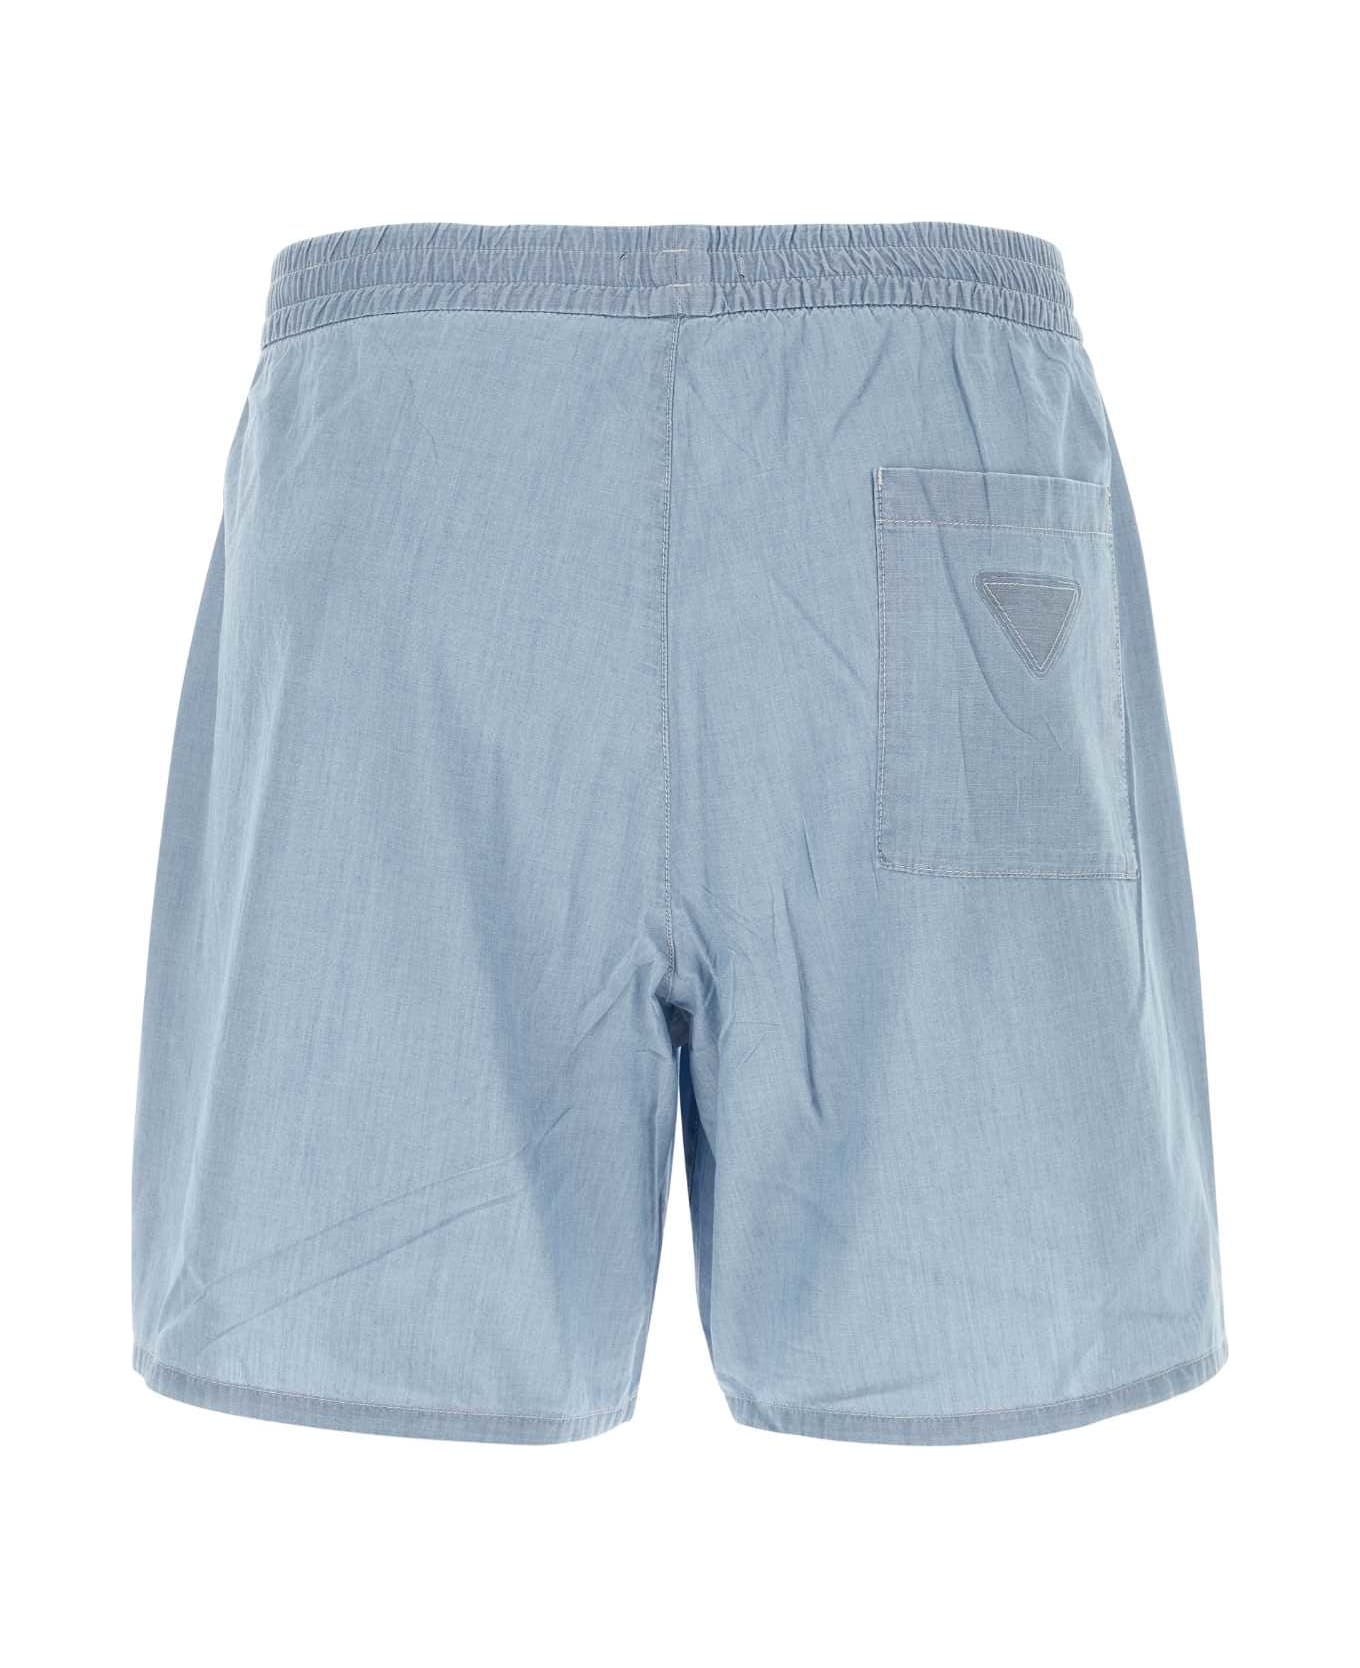 Prada Light Blue Cotton Bermuda Shorts - SKY